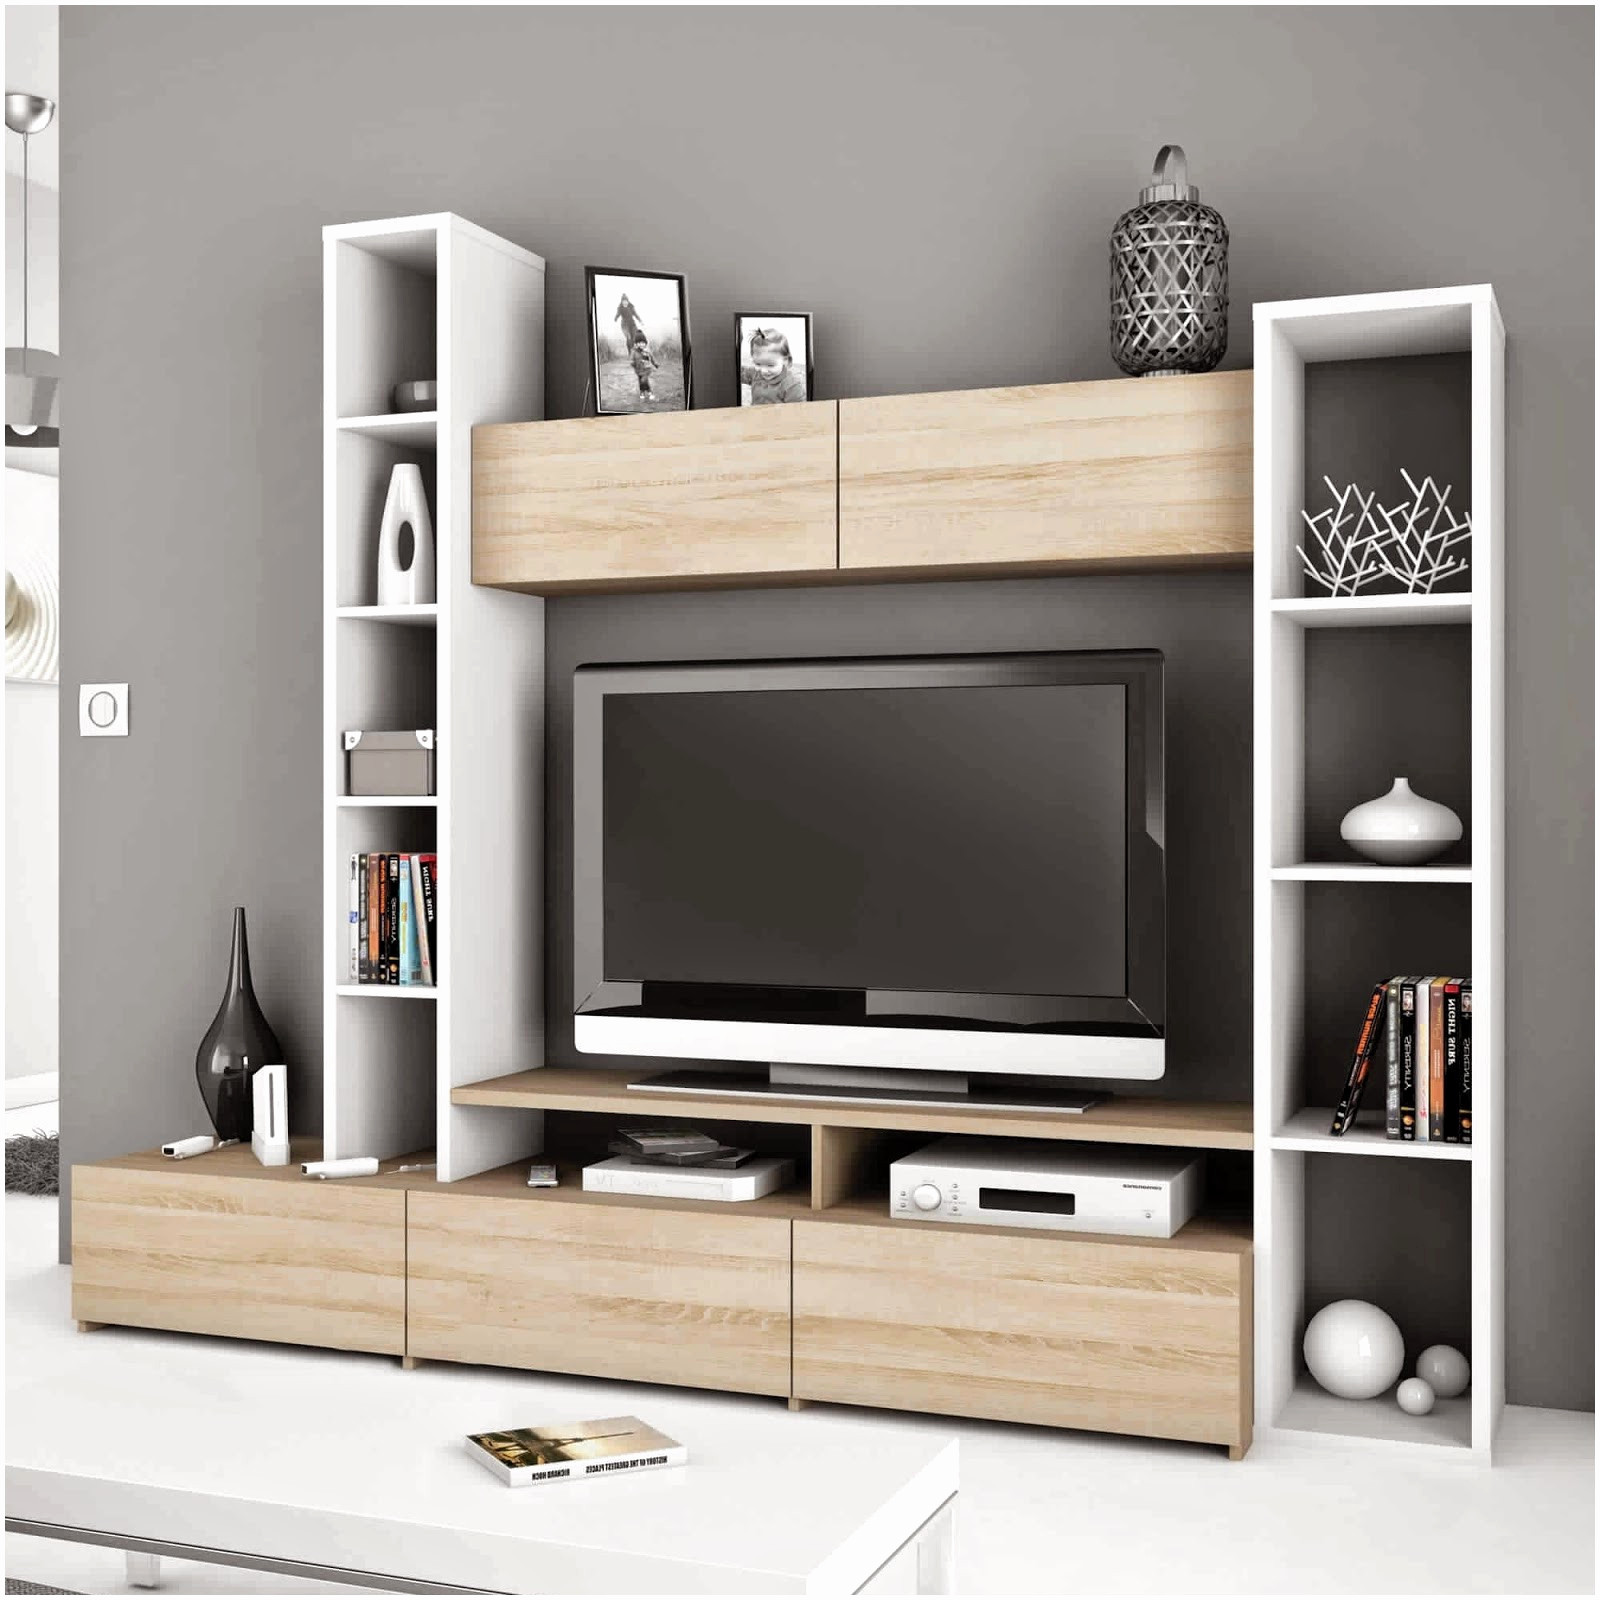 meuble bois design meuble tv bois design nouveau meuble tv long bois luxury meuble tv of meuble bois design